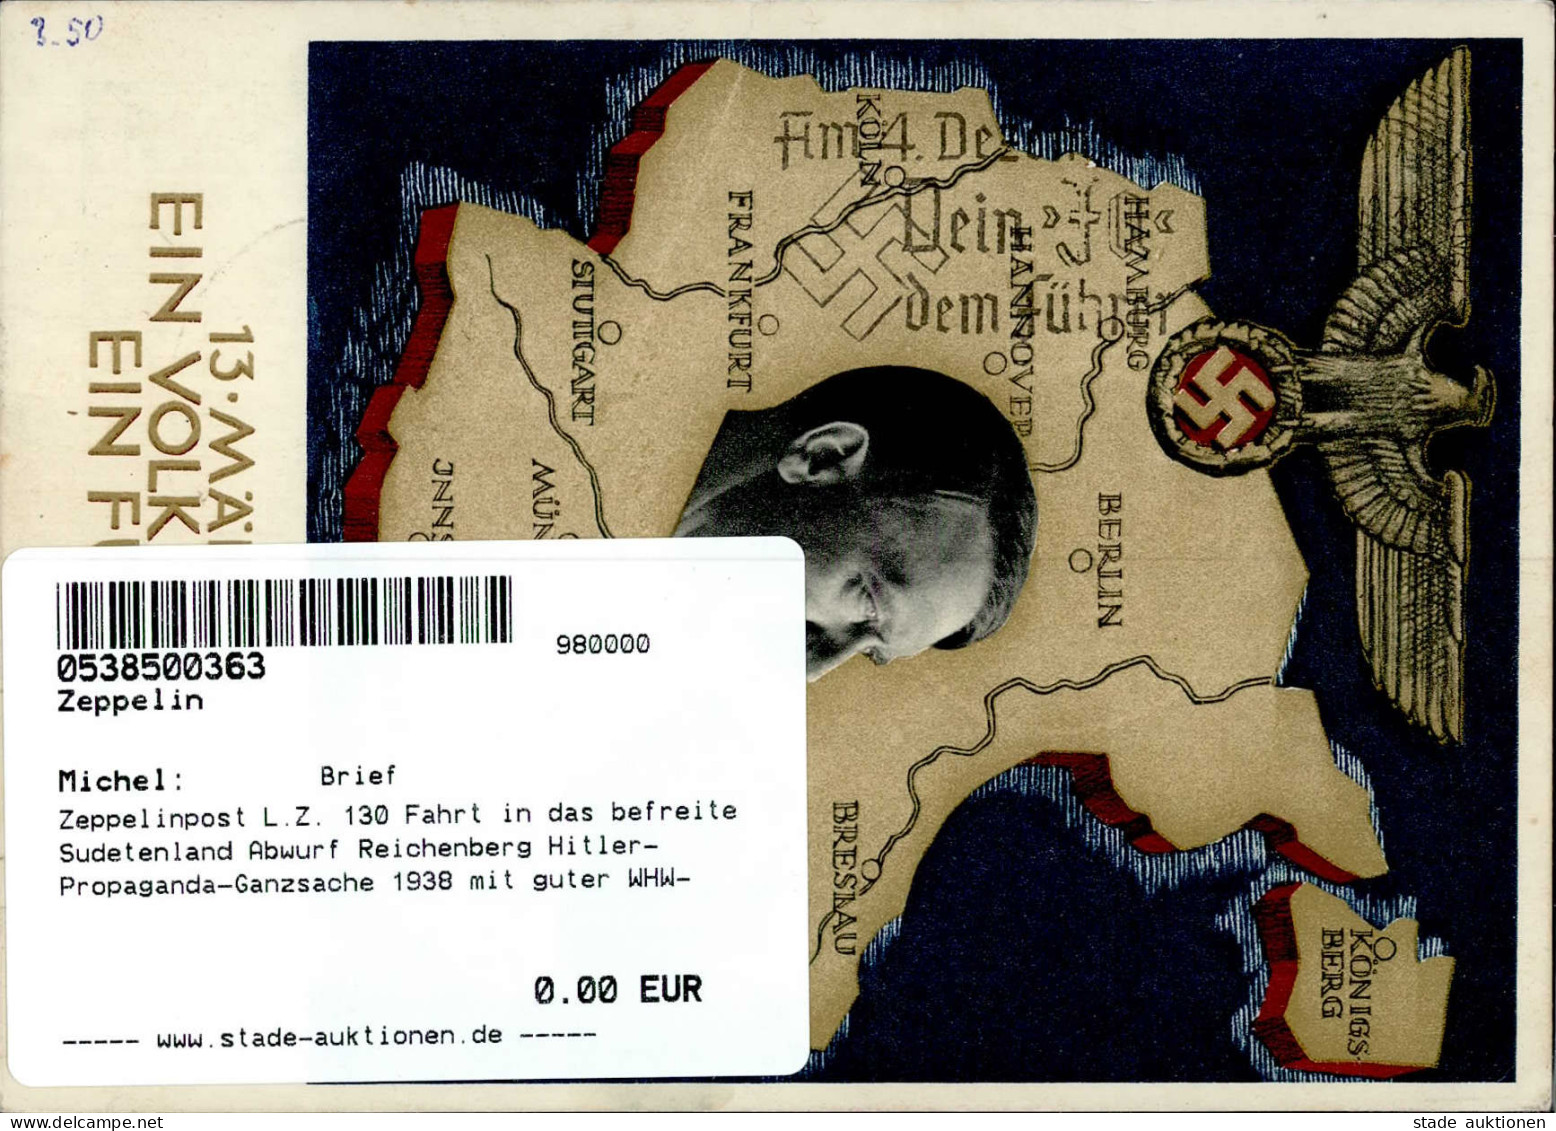 Zeppelinpost L.Z. 130 Fahrt In Das Befreite Sudetenland Abwurf Reichenberg Hitler-Propaganda-Ganzsache 1938 Mit Guter WH - Luchtschepen